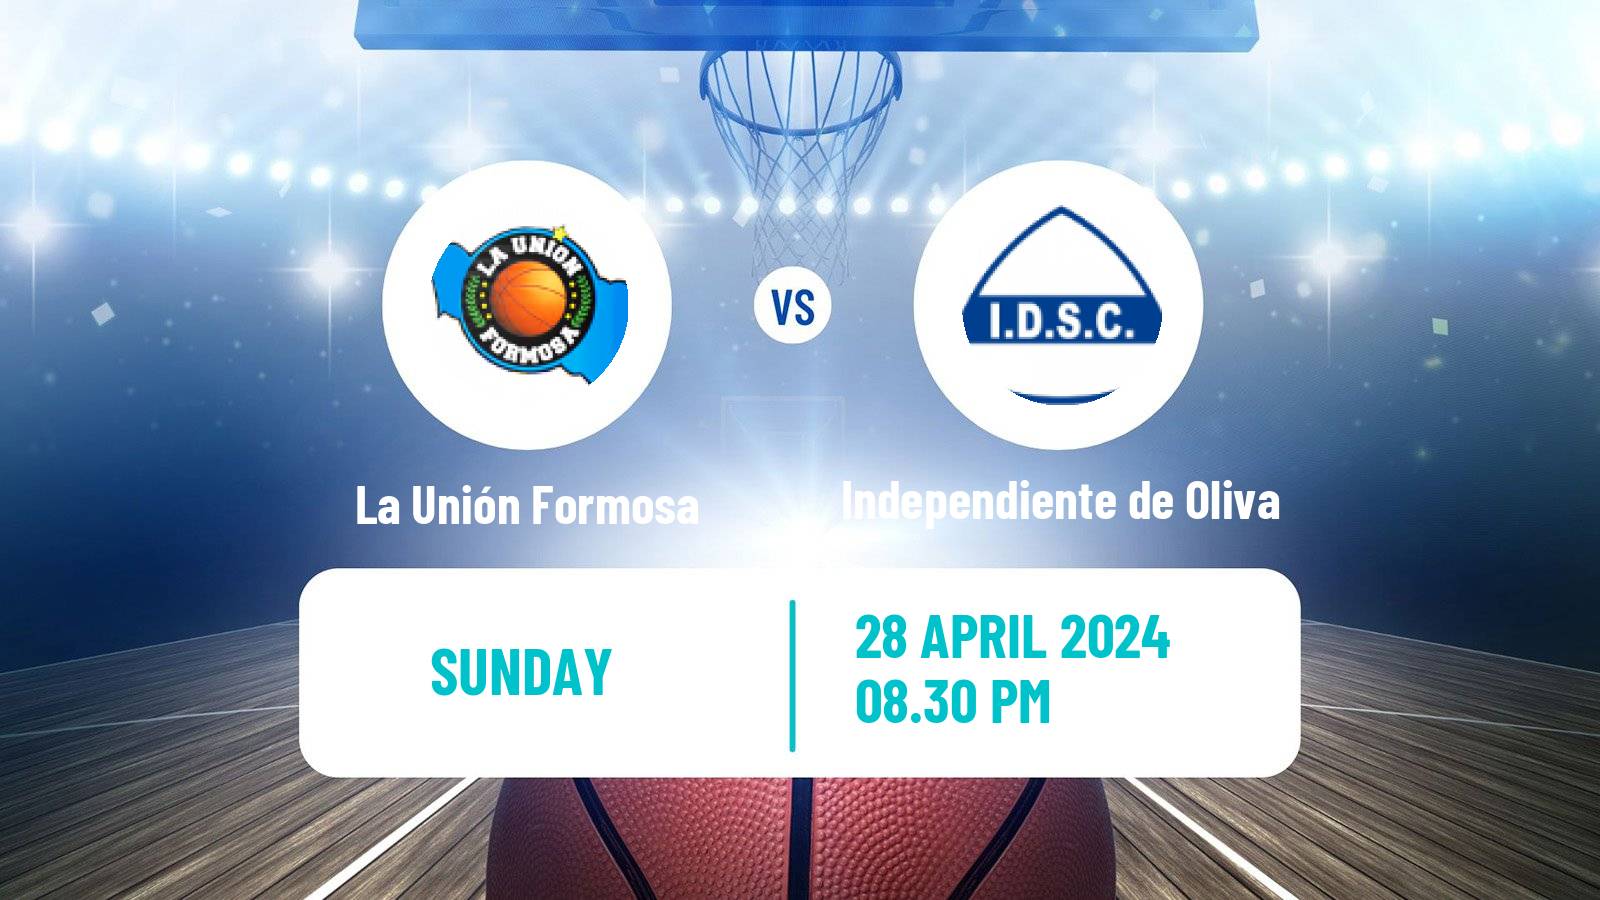 Basketball Argentinian LNB La Unión Formosa - Independiente de Oliva